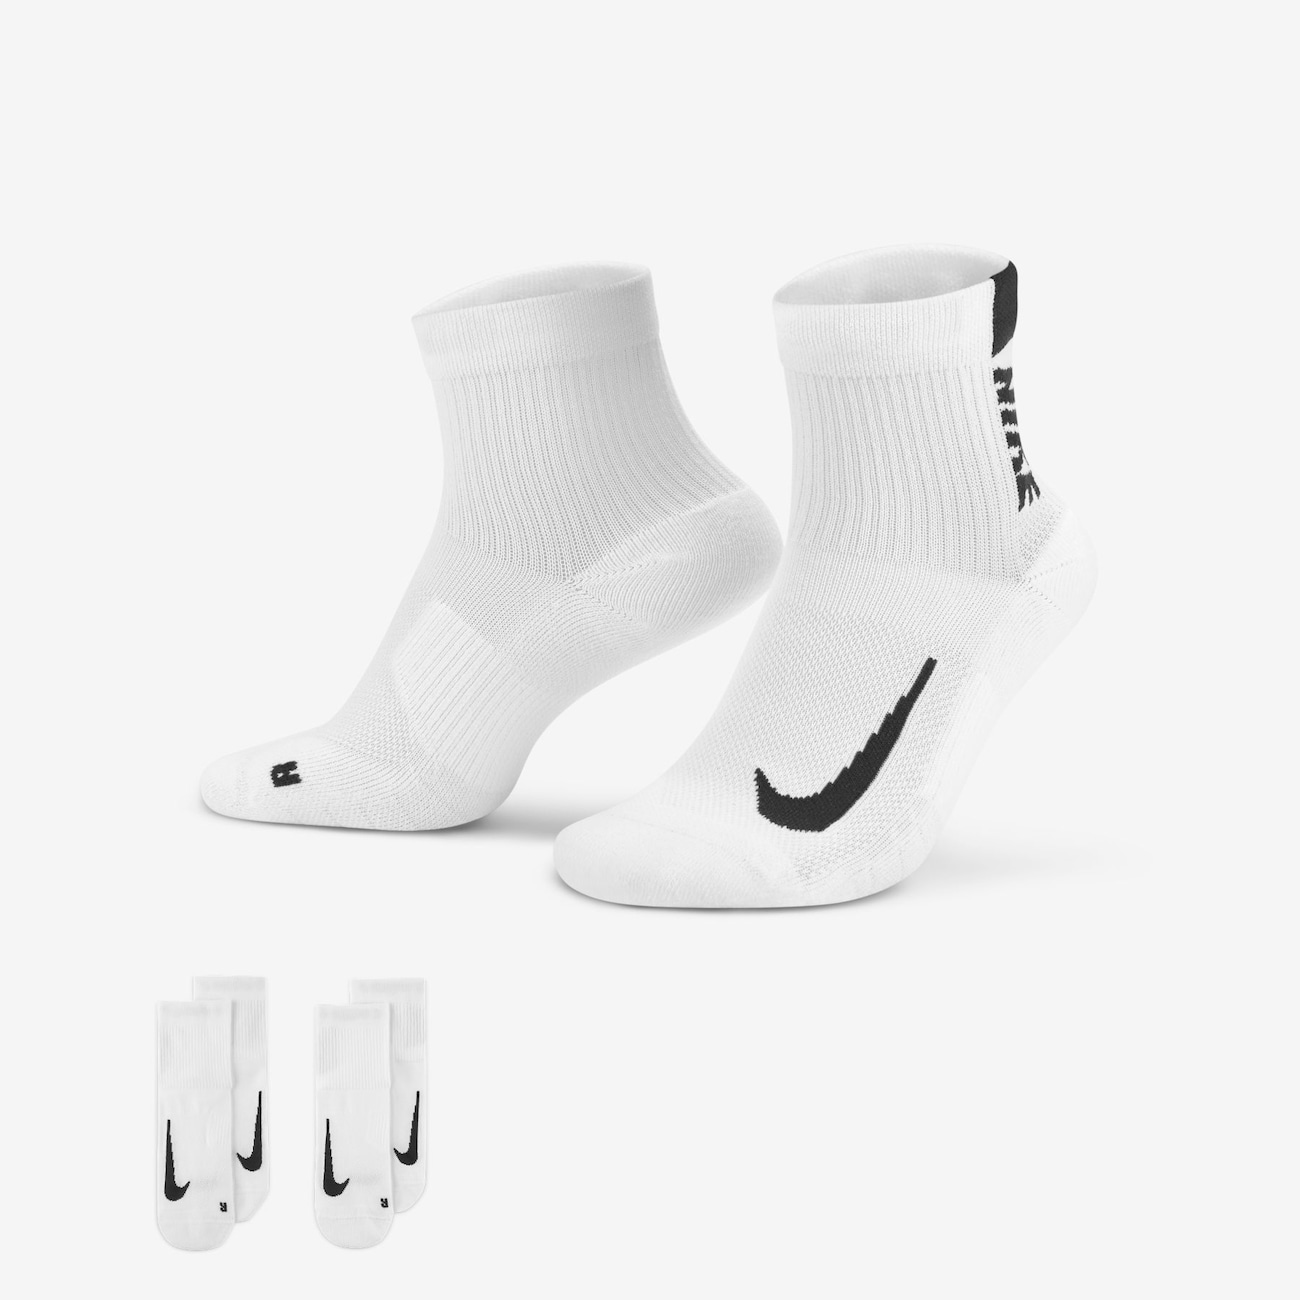 Meia Nike Multiplier Unissex - Foto 1